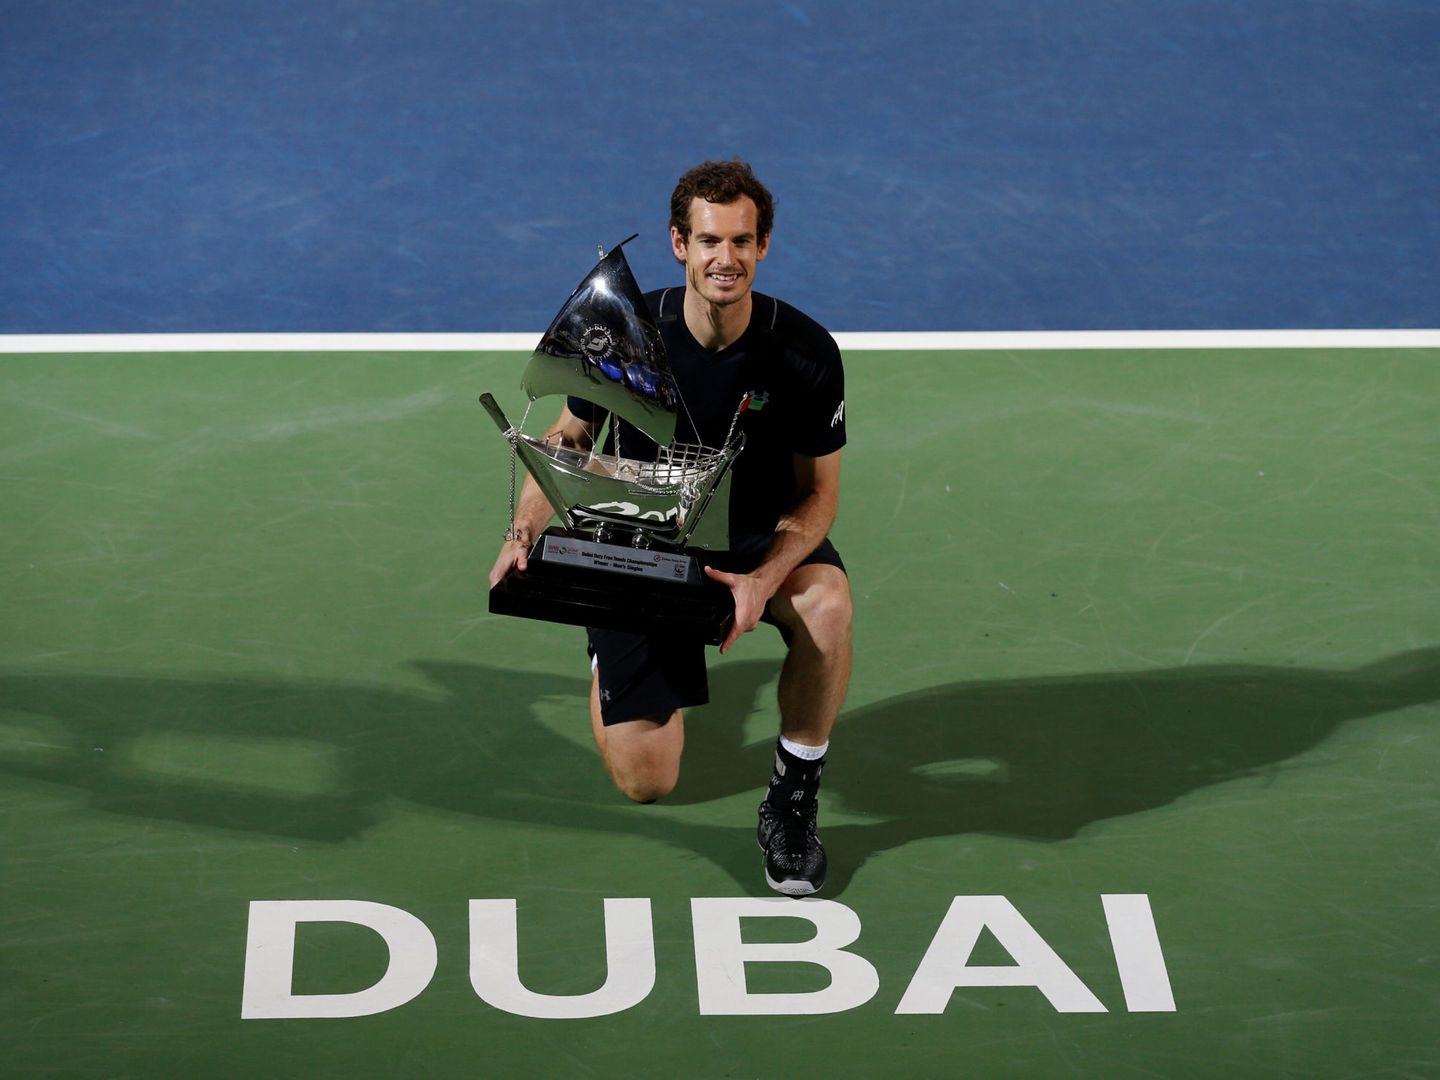 Dubái, marzo de 2017. El último título de Andy Murray. (Reuters)